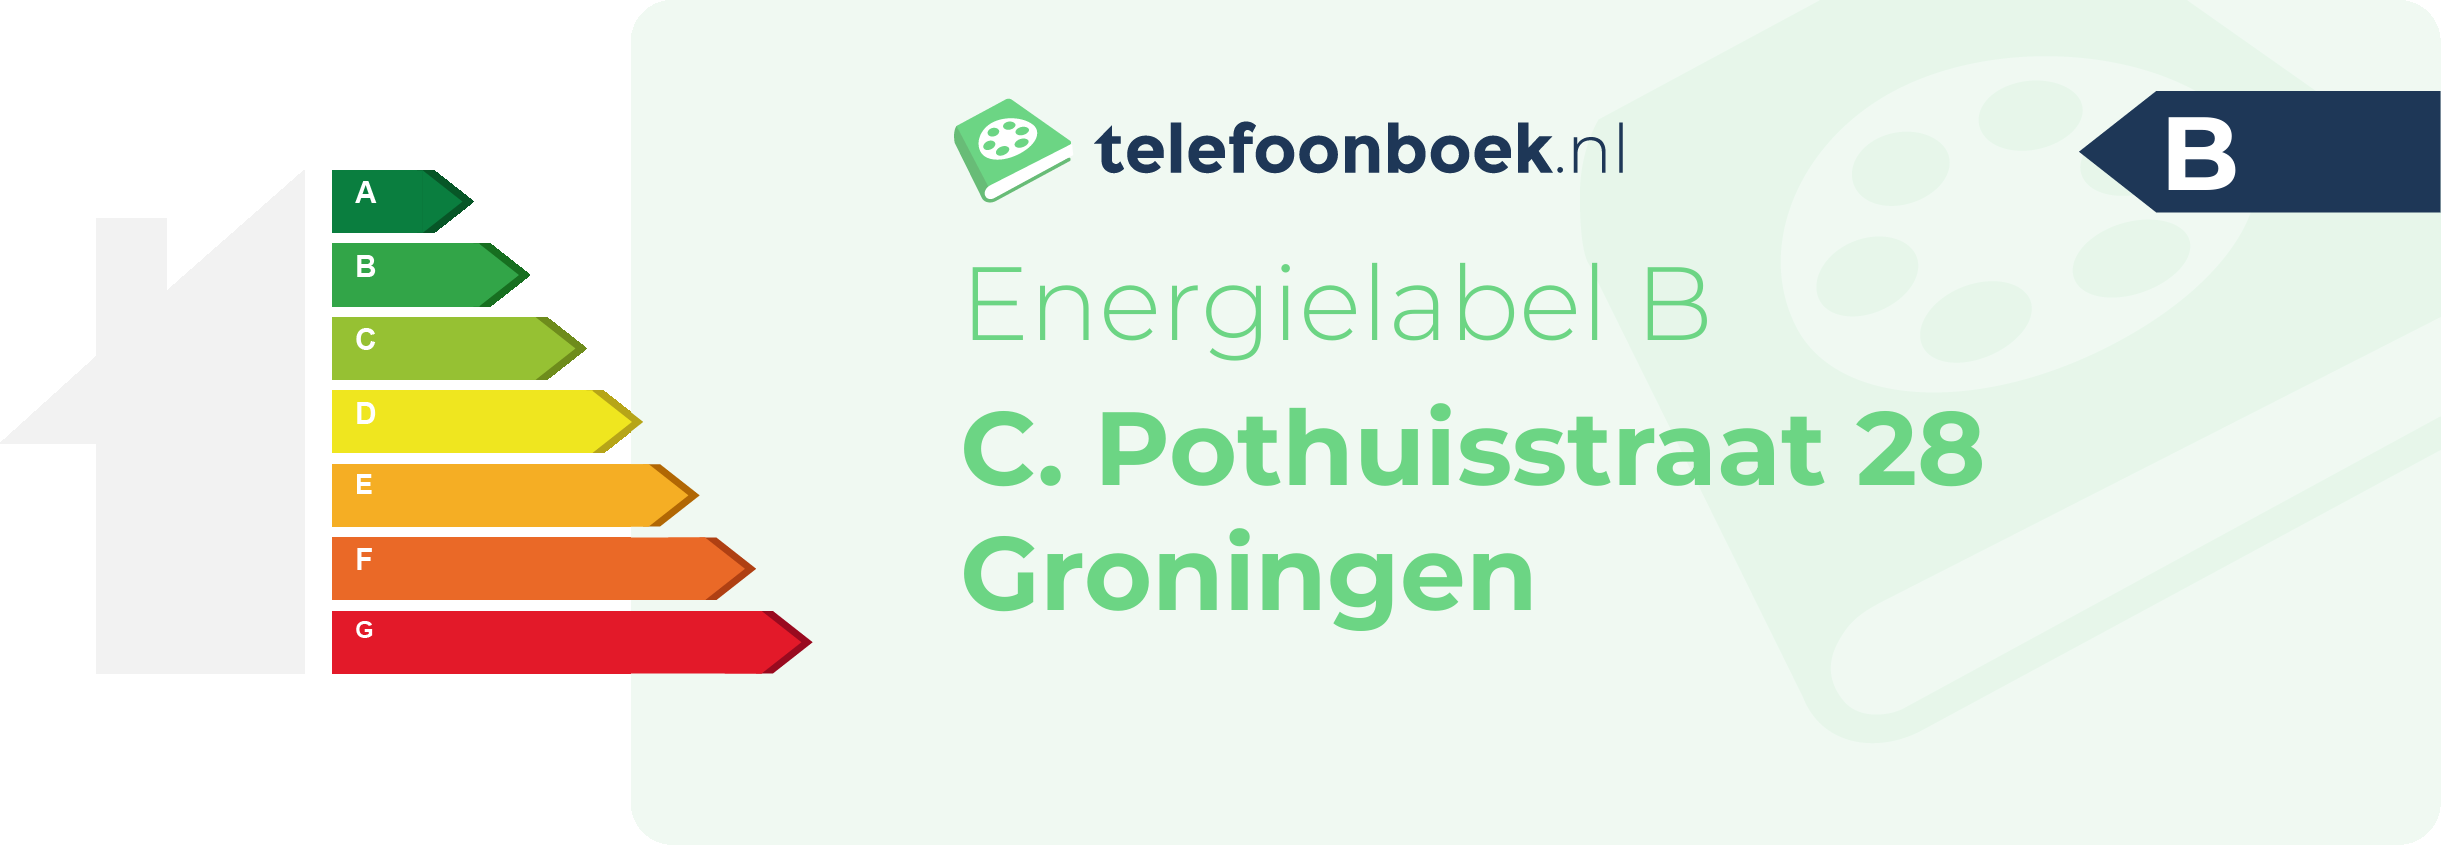 Energielabel C. Pothuisstraat 28 Groningen